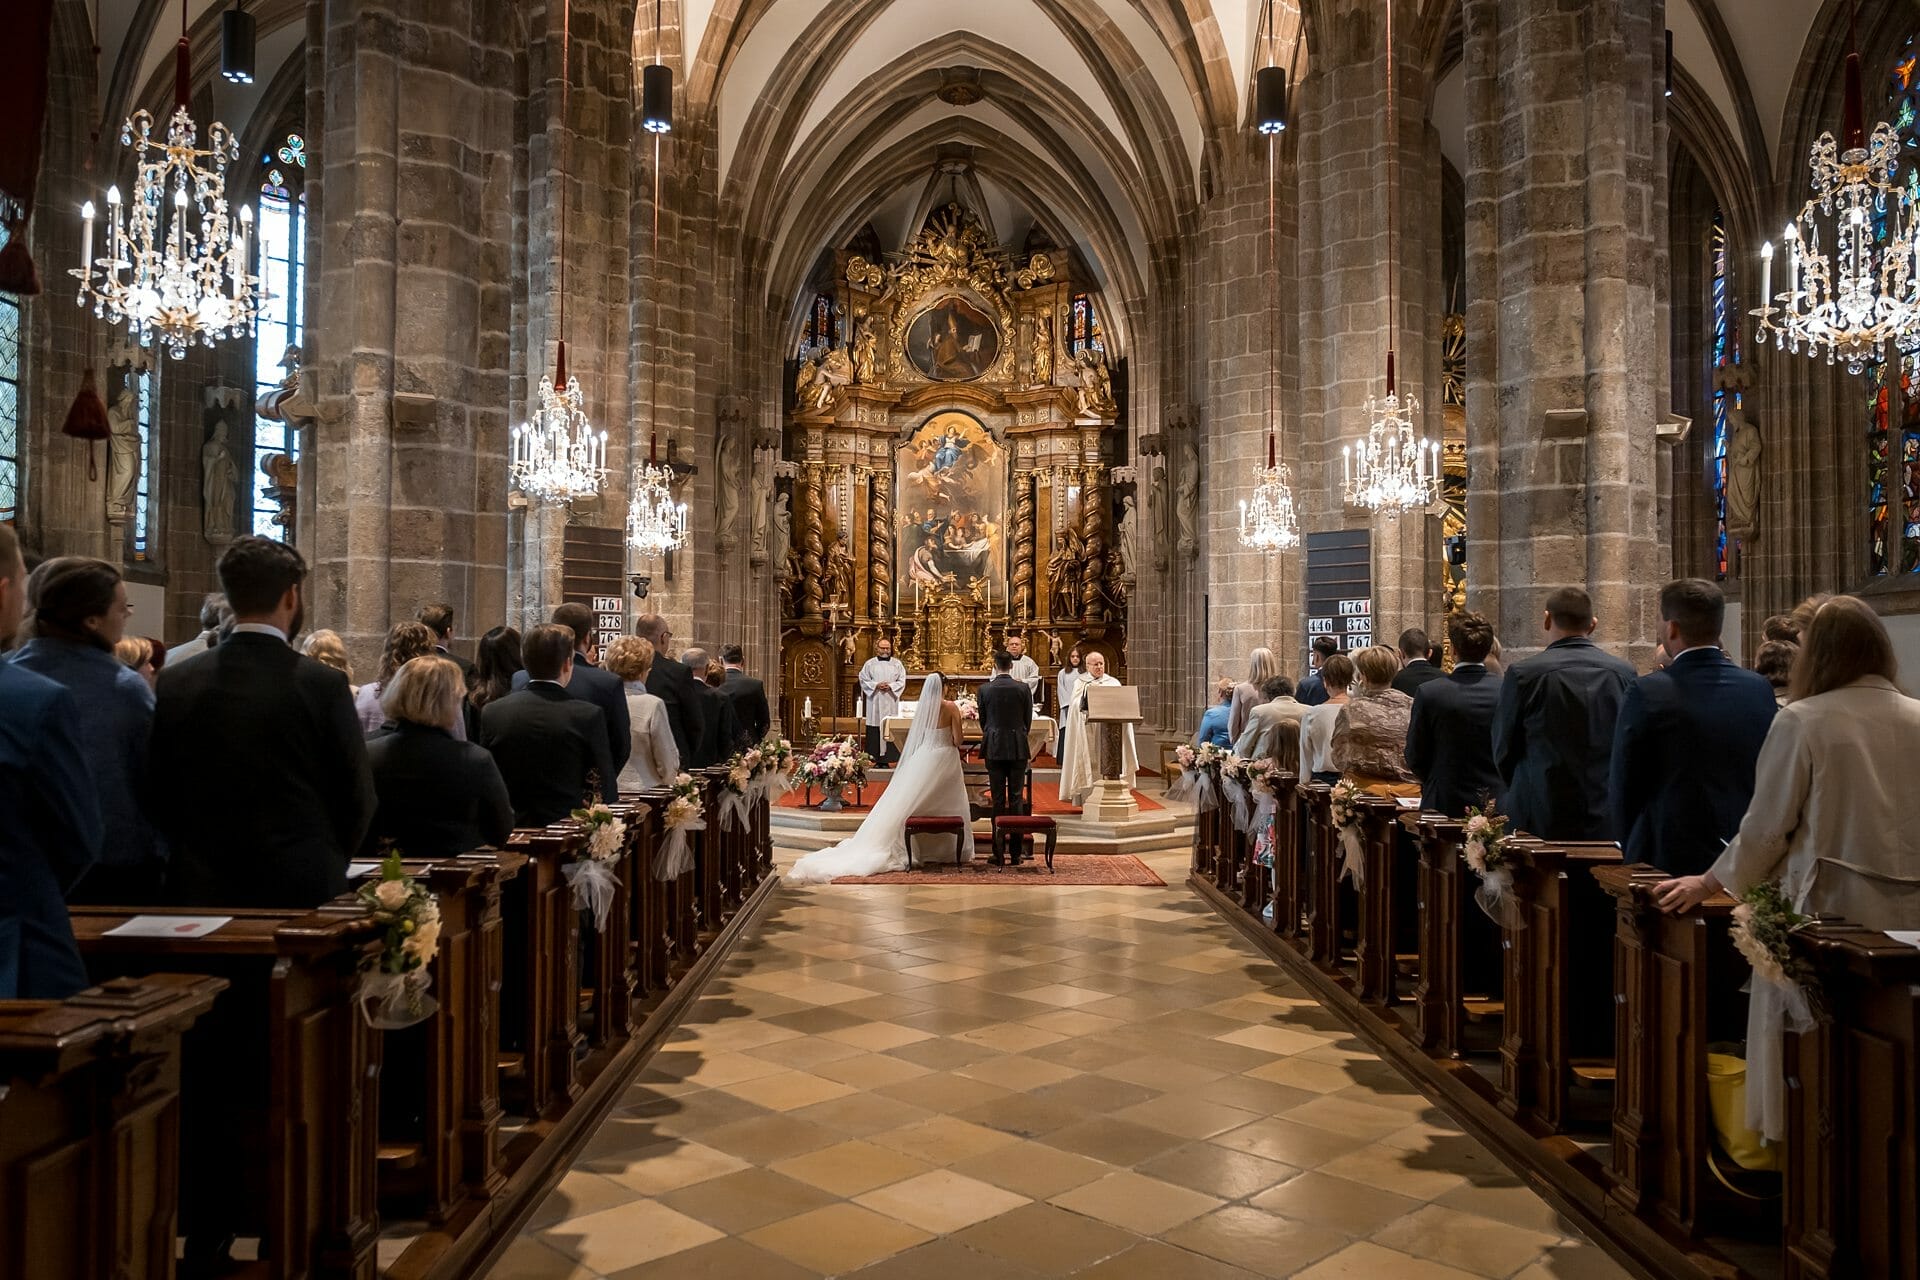 Eine Hochzeitszeremonie in einer Kirche, bei der Braut und Bräutigam den Gang entlanggehen.